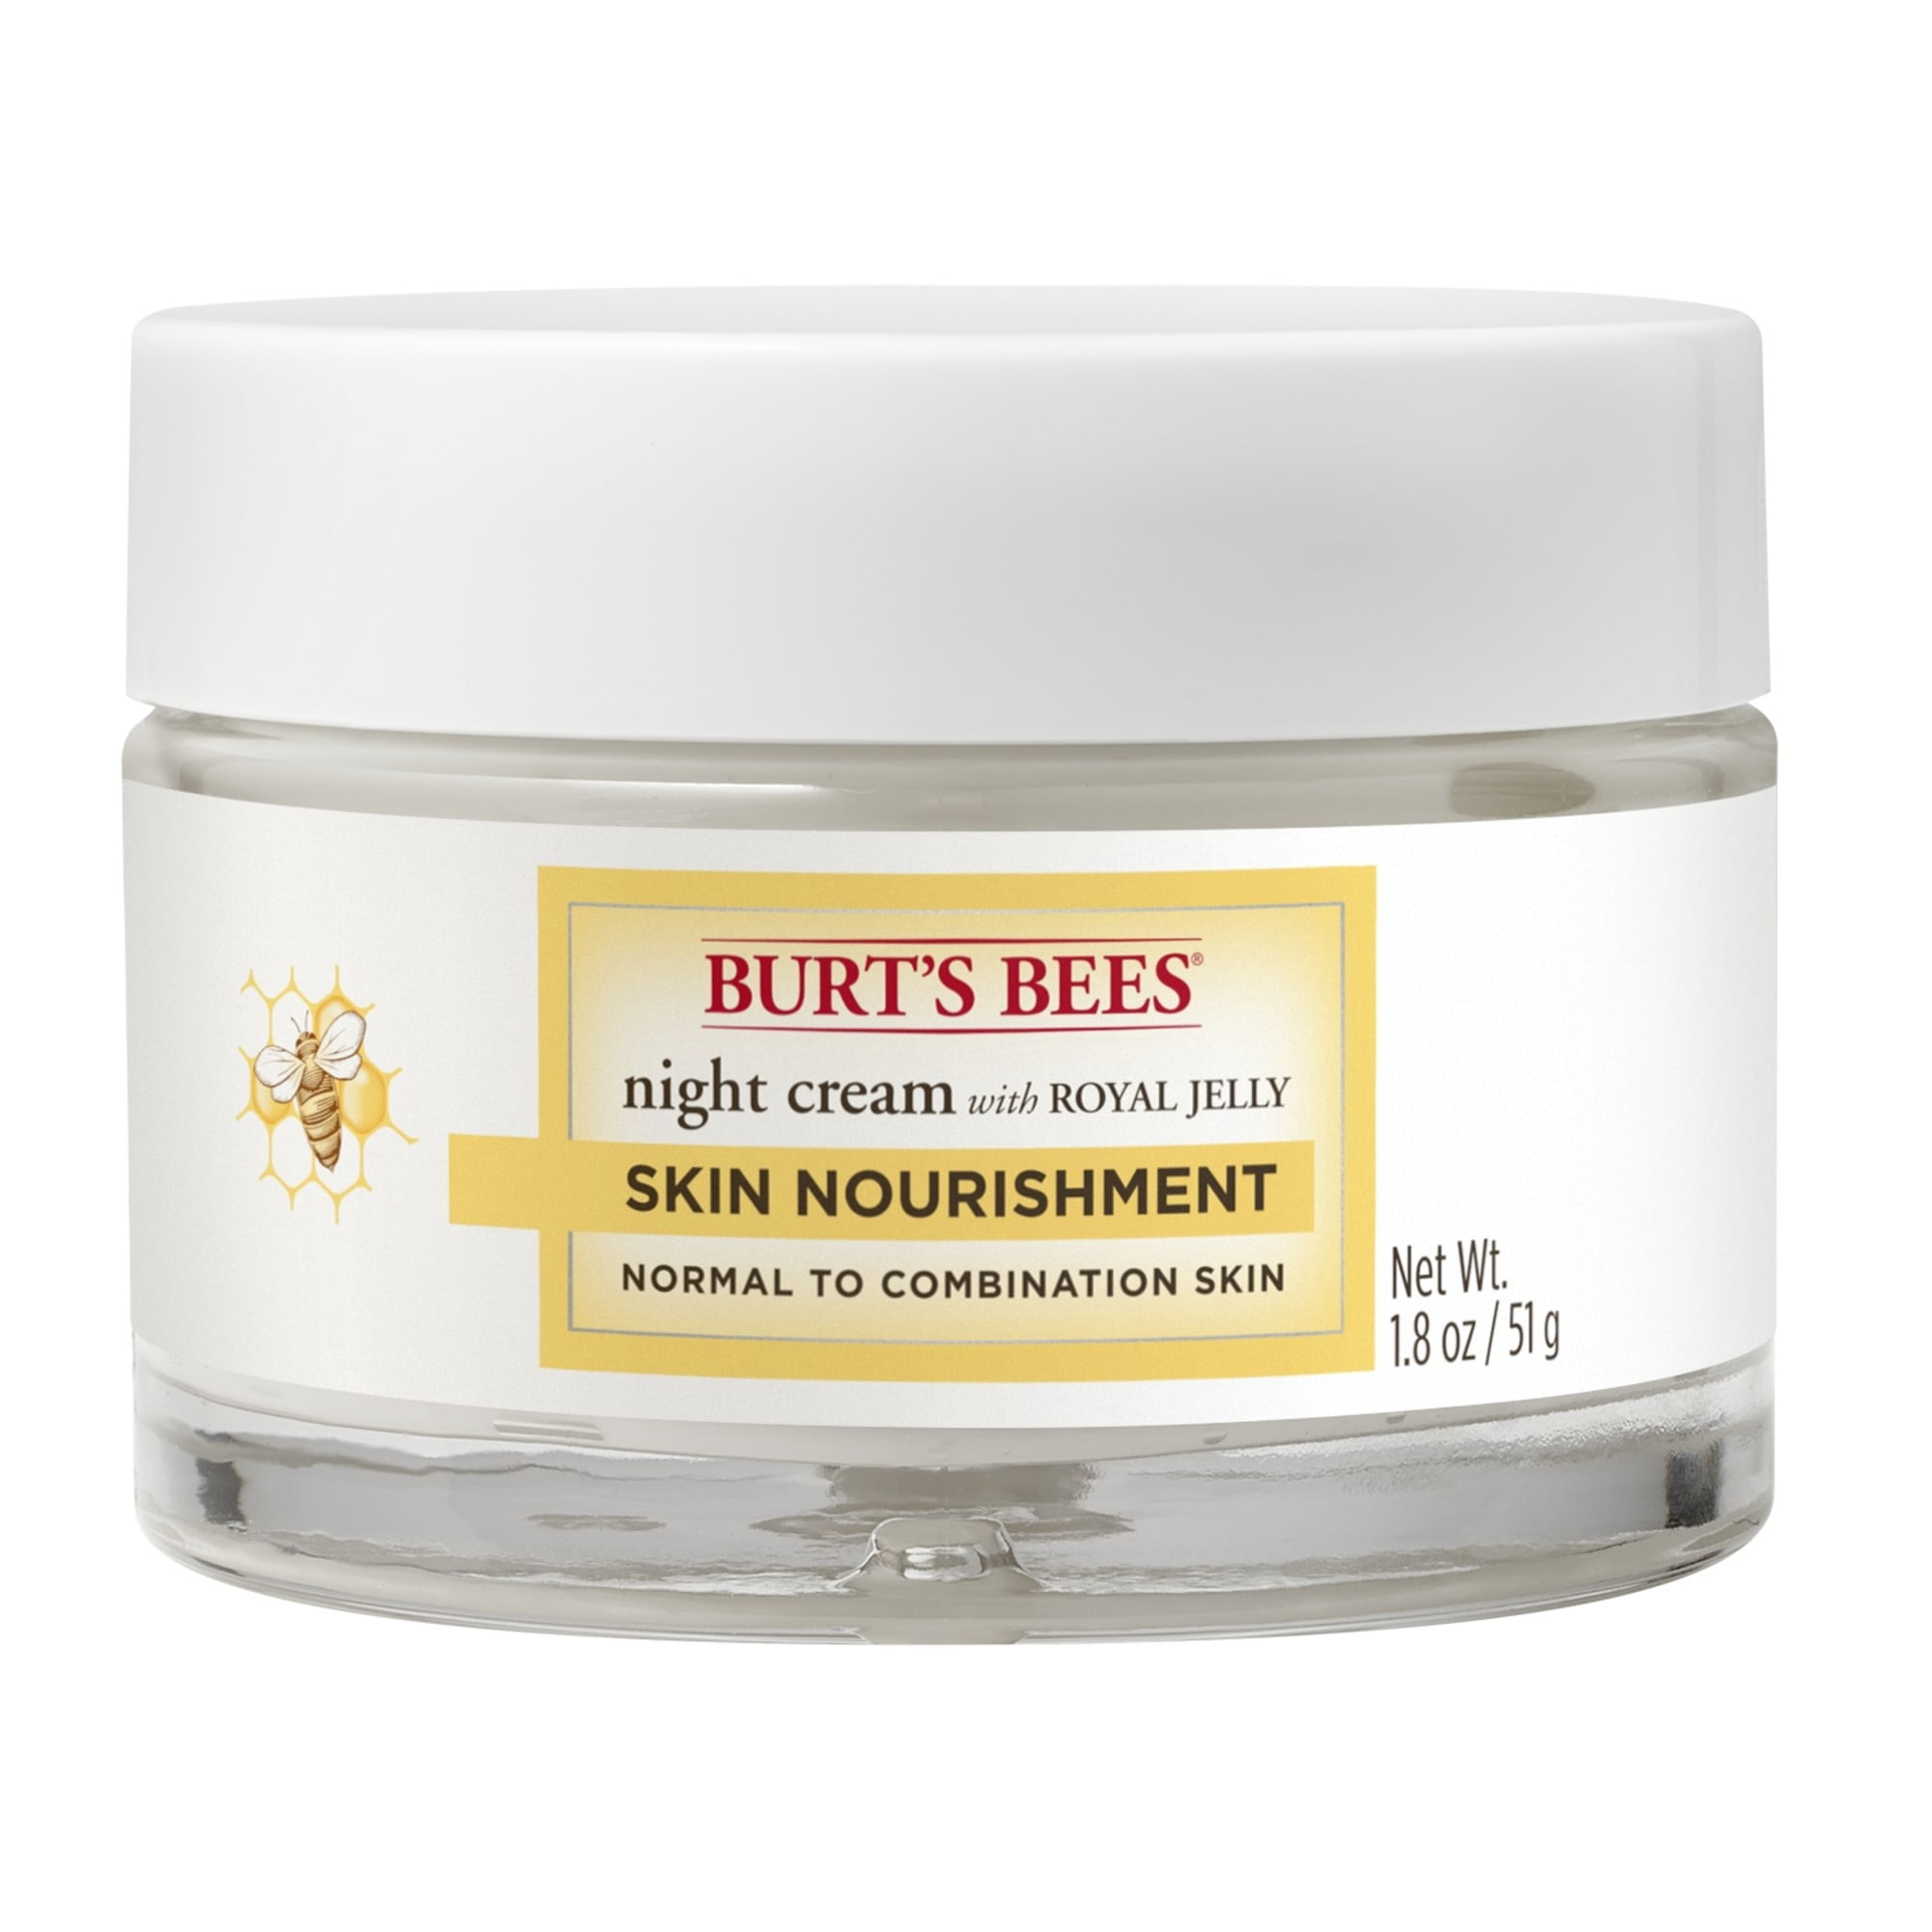 Normaal hiërarchie kans Burt's Bees Nourishment Night Cream Normal to Combination Skin, 1.8 oz -  Walmart.com